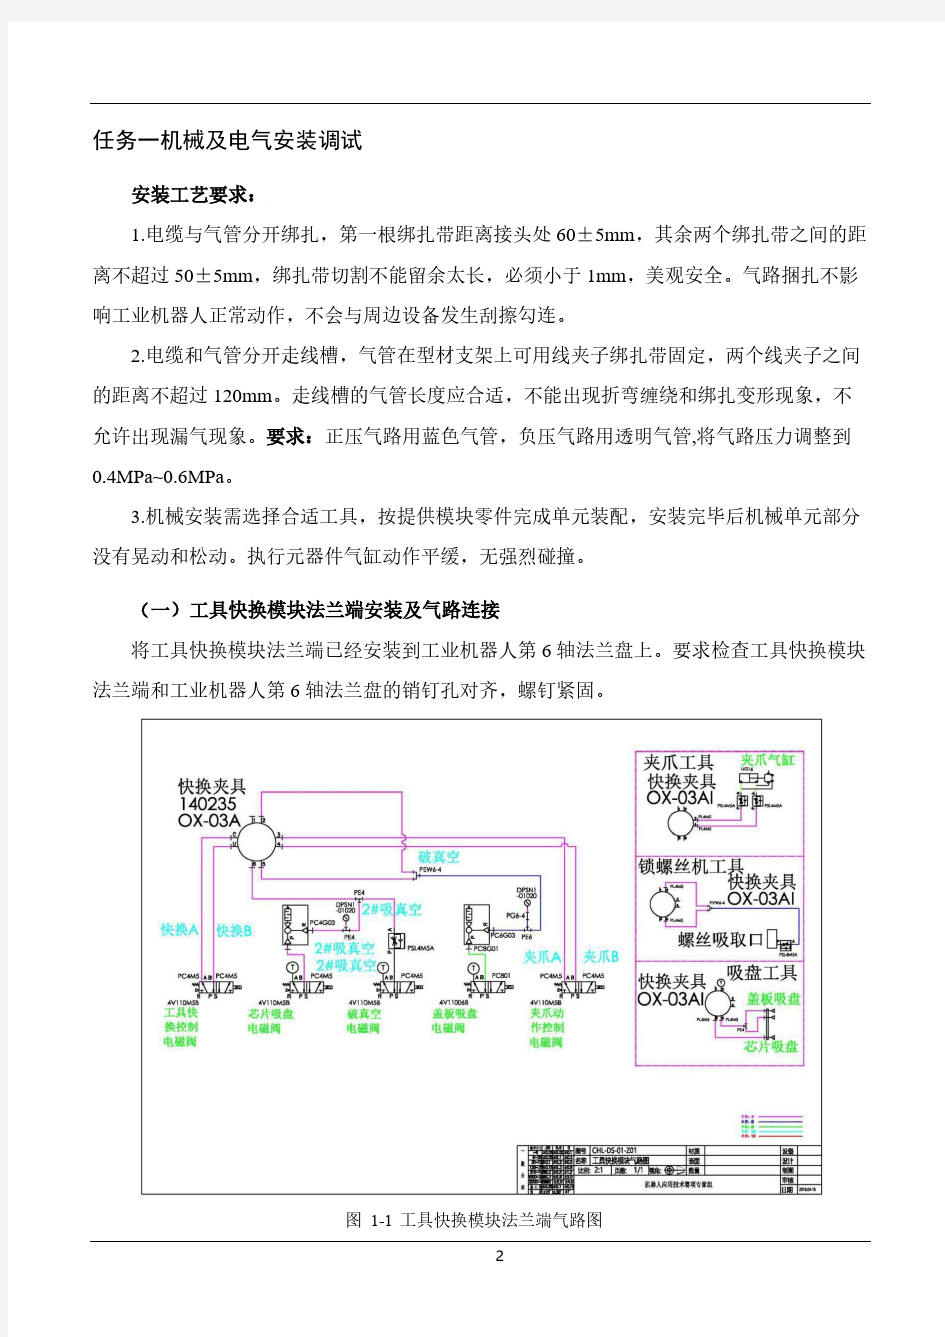 江苏省赛教师组任务书样题(机器人技术应用)